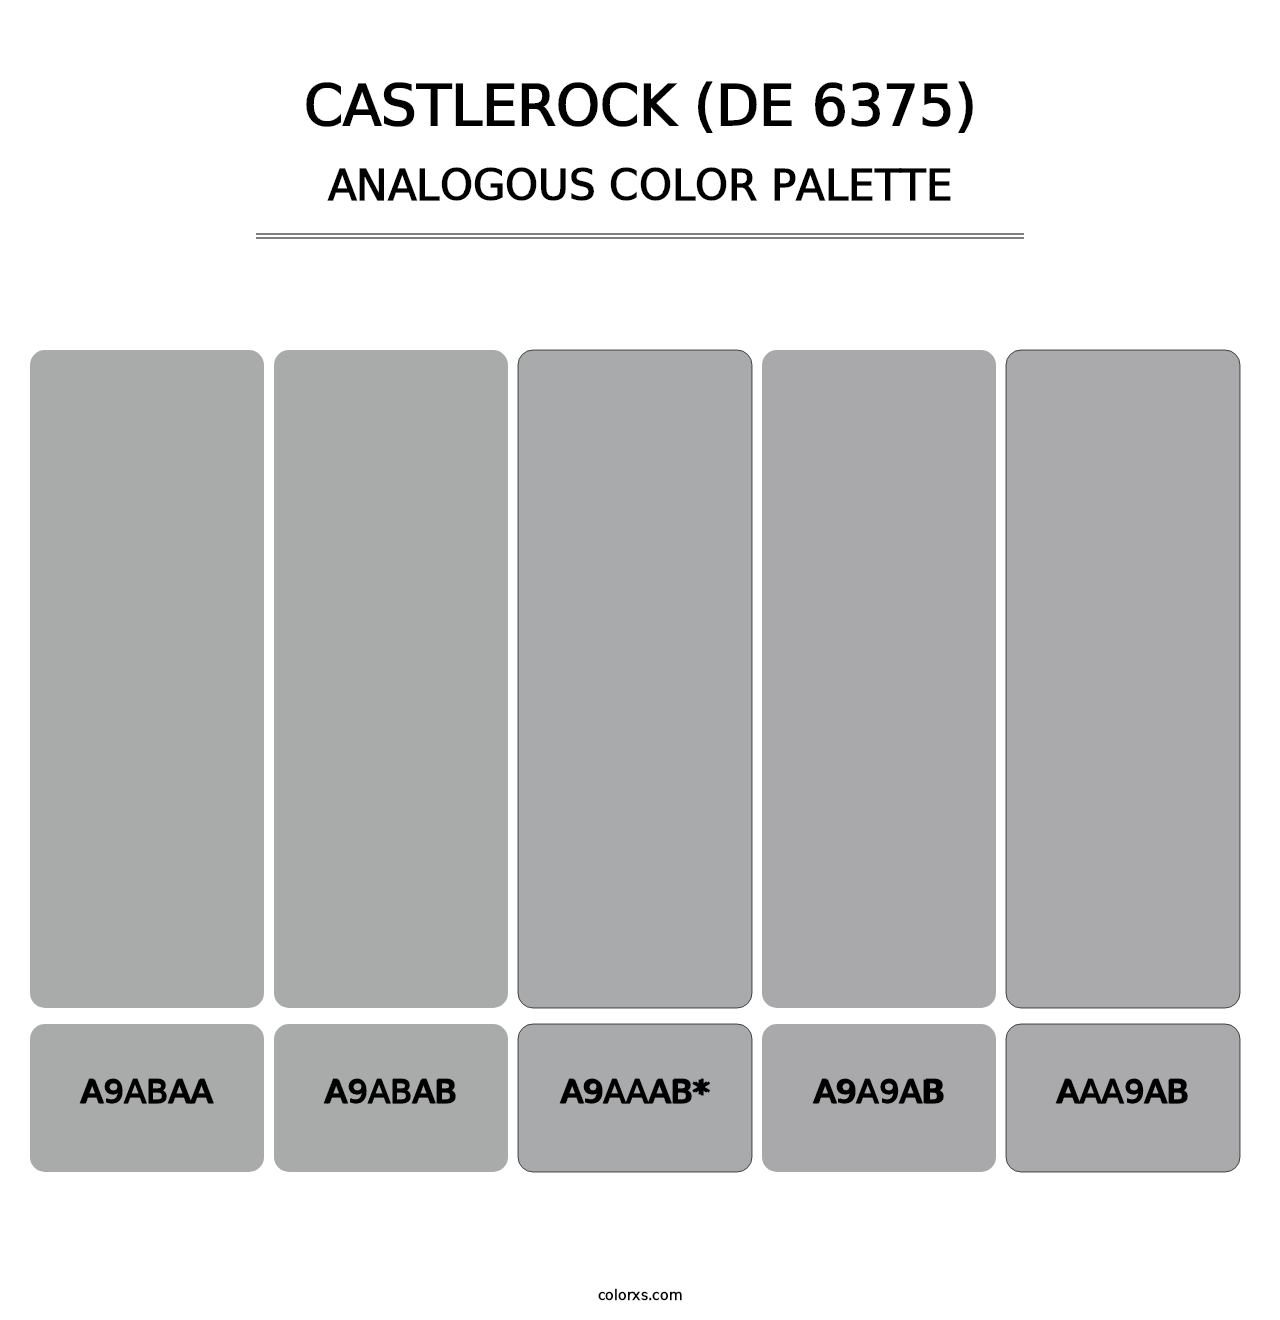 Castlerock (DE 6375) - Analogous Color Palette